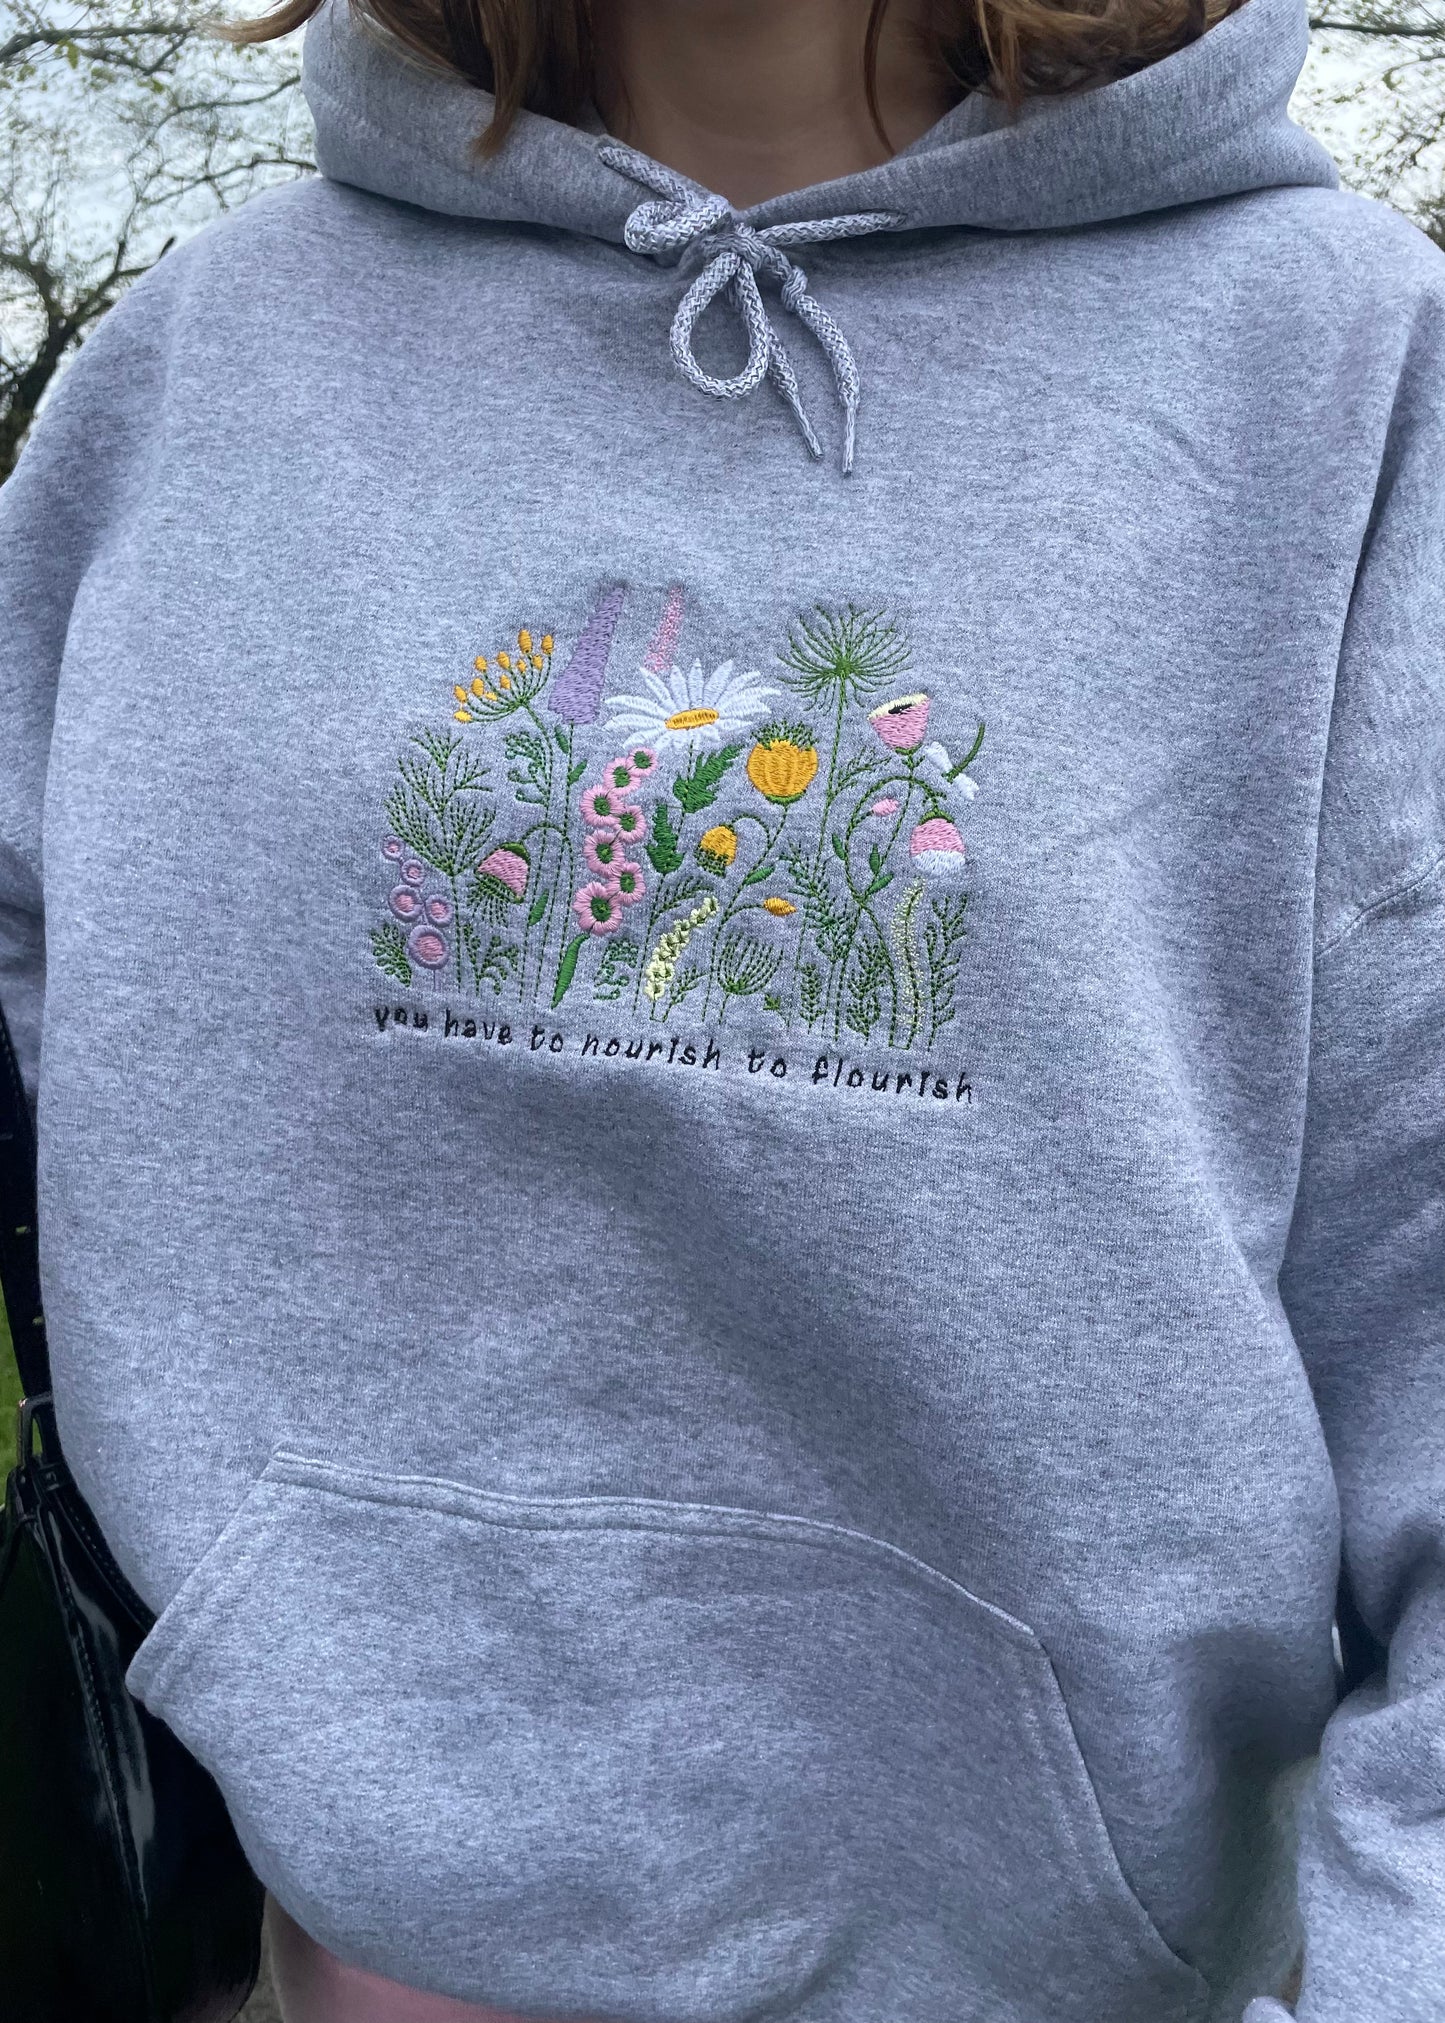 Nourish to flourish hoodie